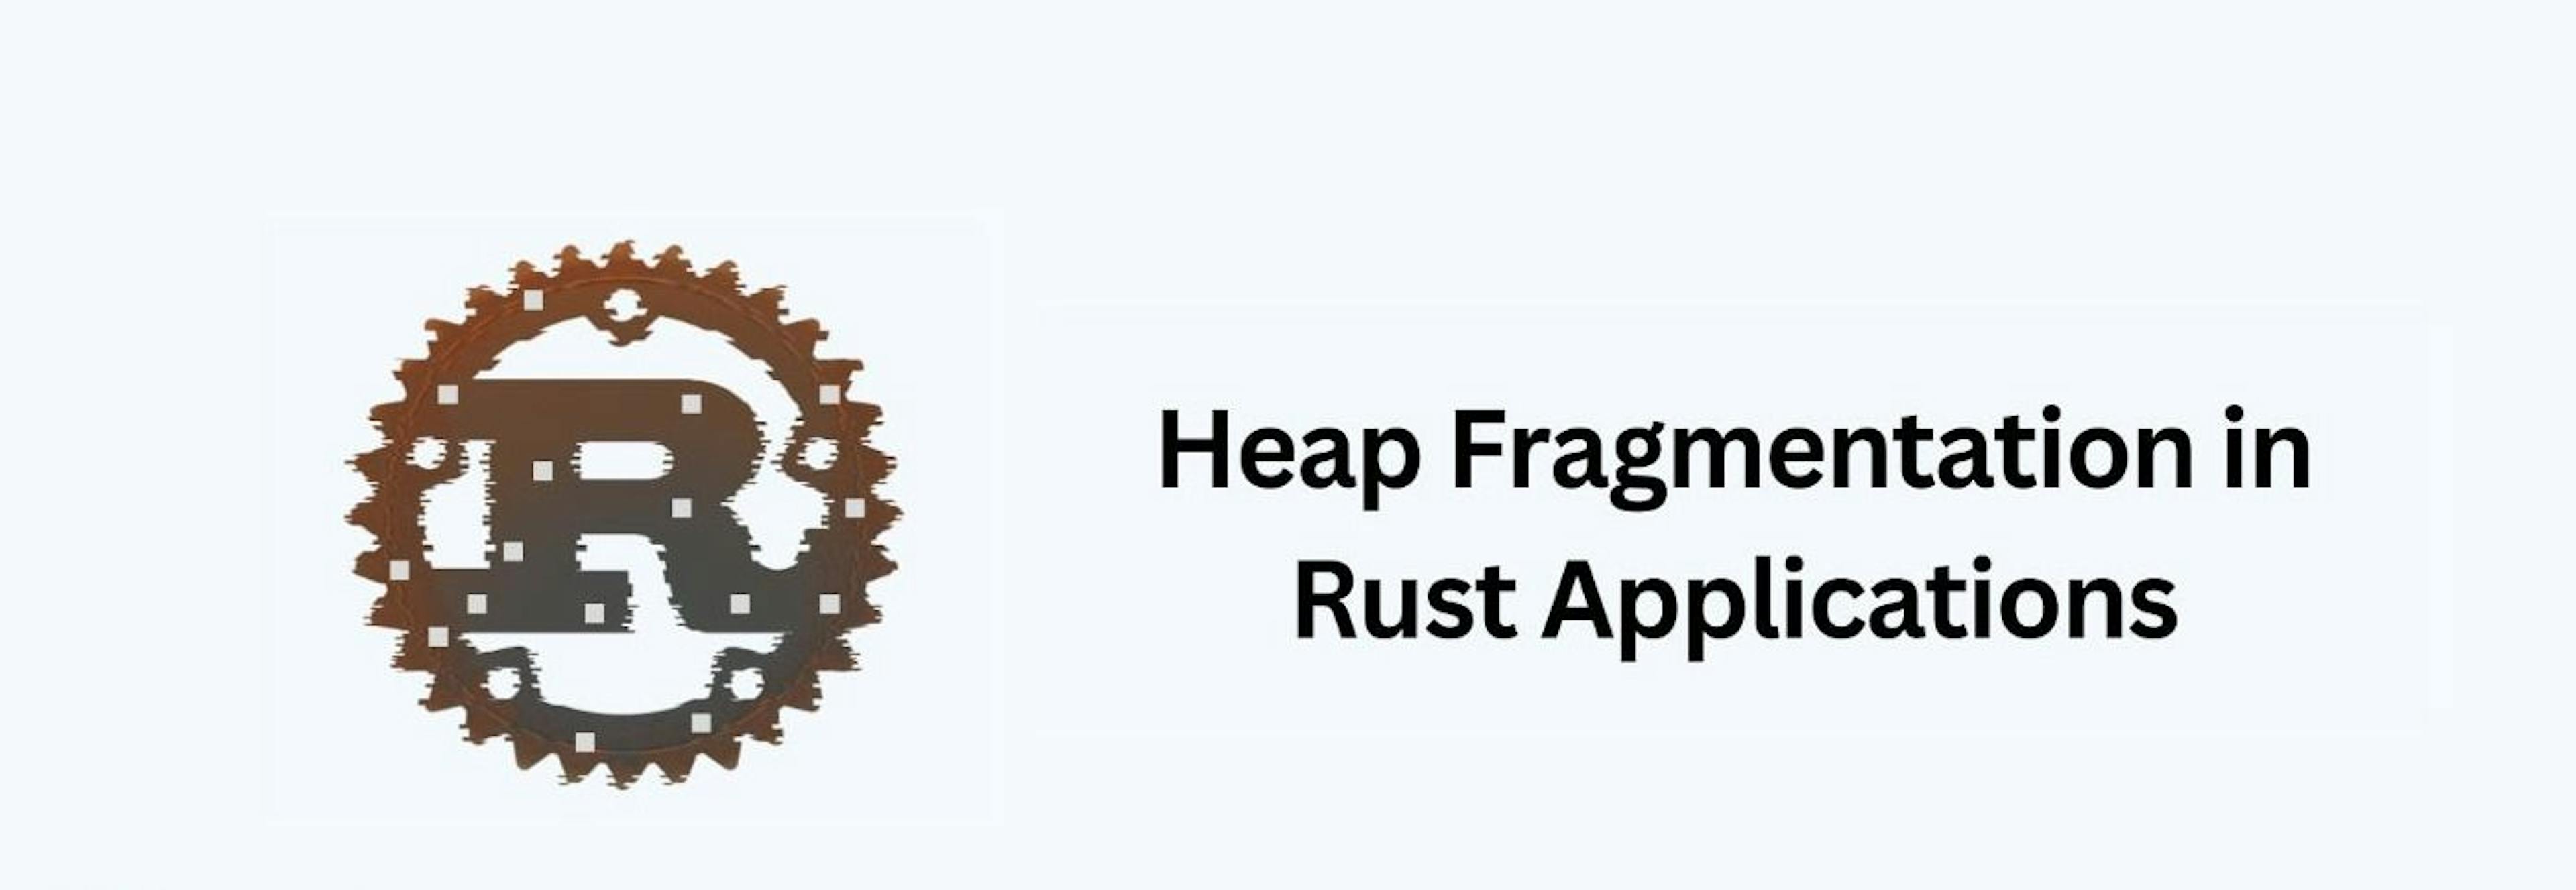 featured image - Como identificar e evitar a fragmentação de heap em aplicativos Rust